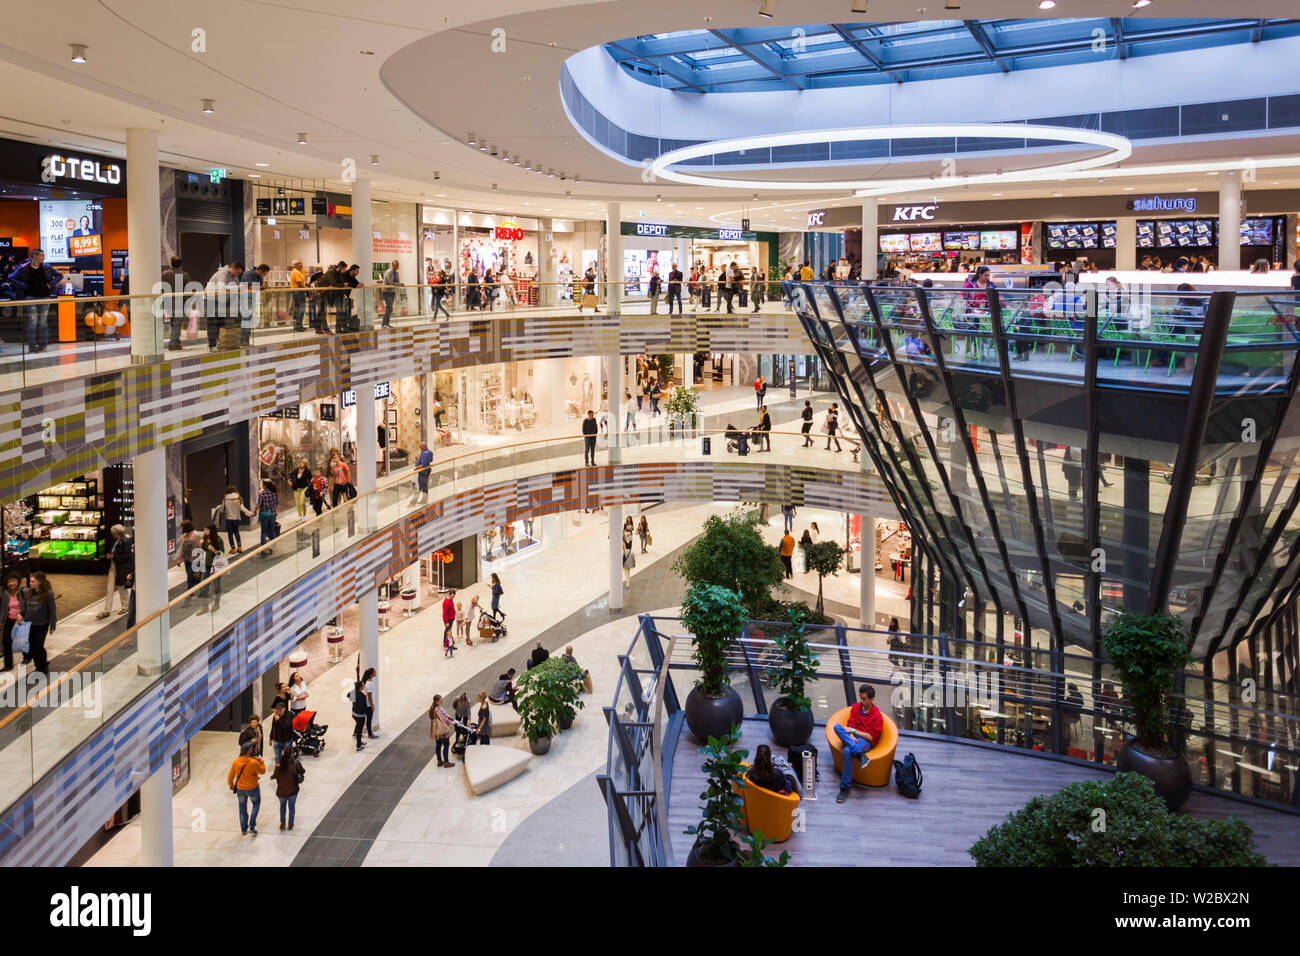 Allemagne, Baden-wurttemberg, Stuttgart, Mailander Platz, Milaneo Shopping Centre, de l'intérieur, ouvert en 2014 Banque D'Images